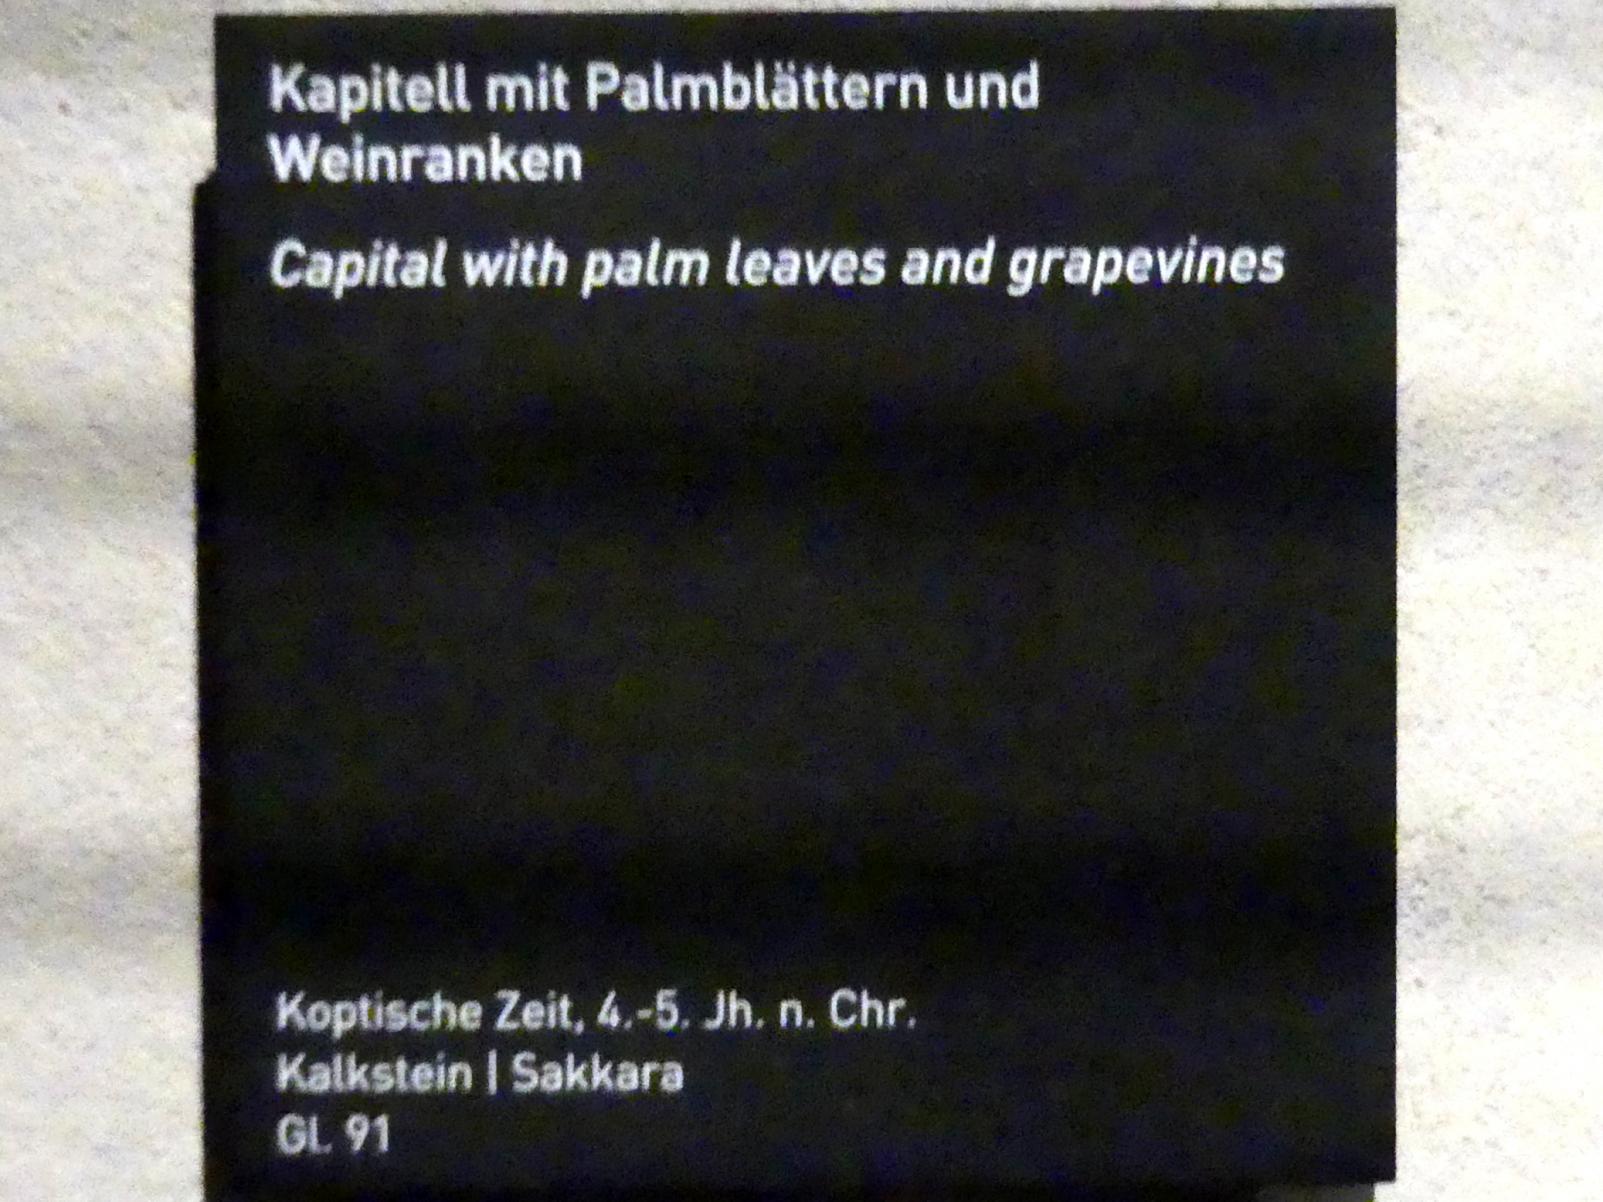 Kapitell mit Palmblättern und Weinranken, Koptische Zeit, 200 - 800, 300 - 500, Bild 2/2